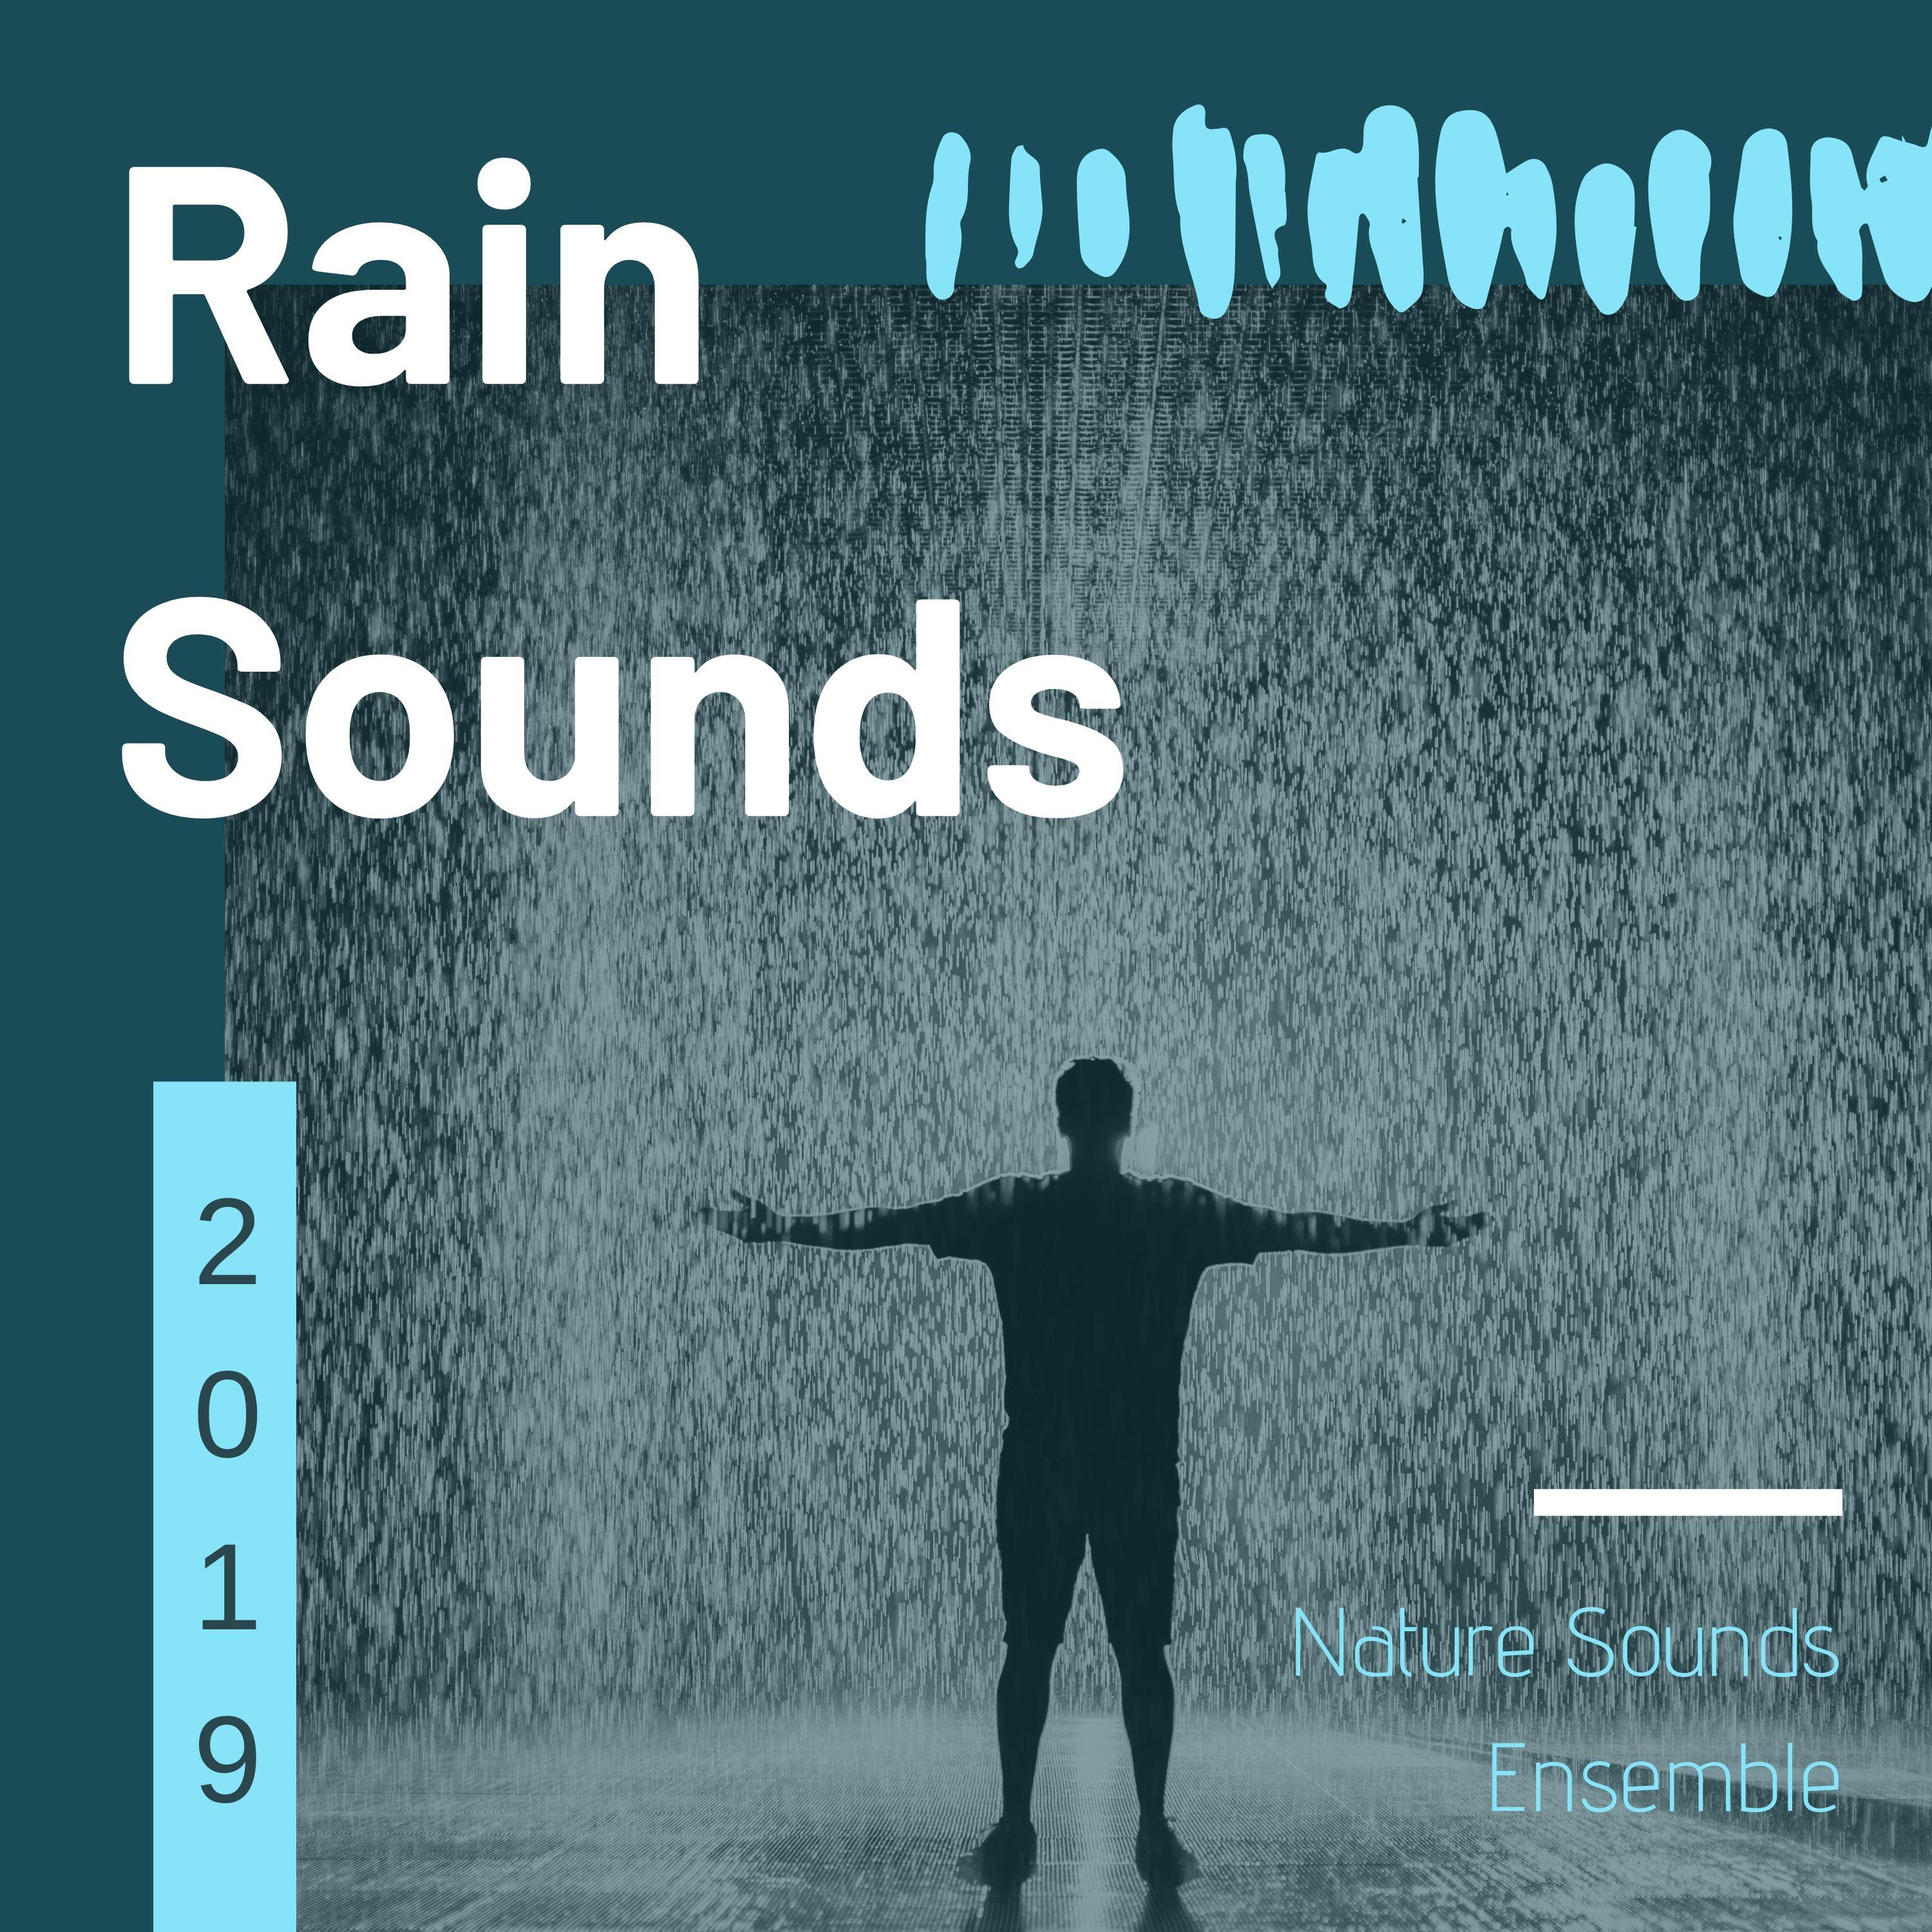 Rain Sounds 2019 - Nature Sounds Ensemble